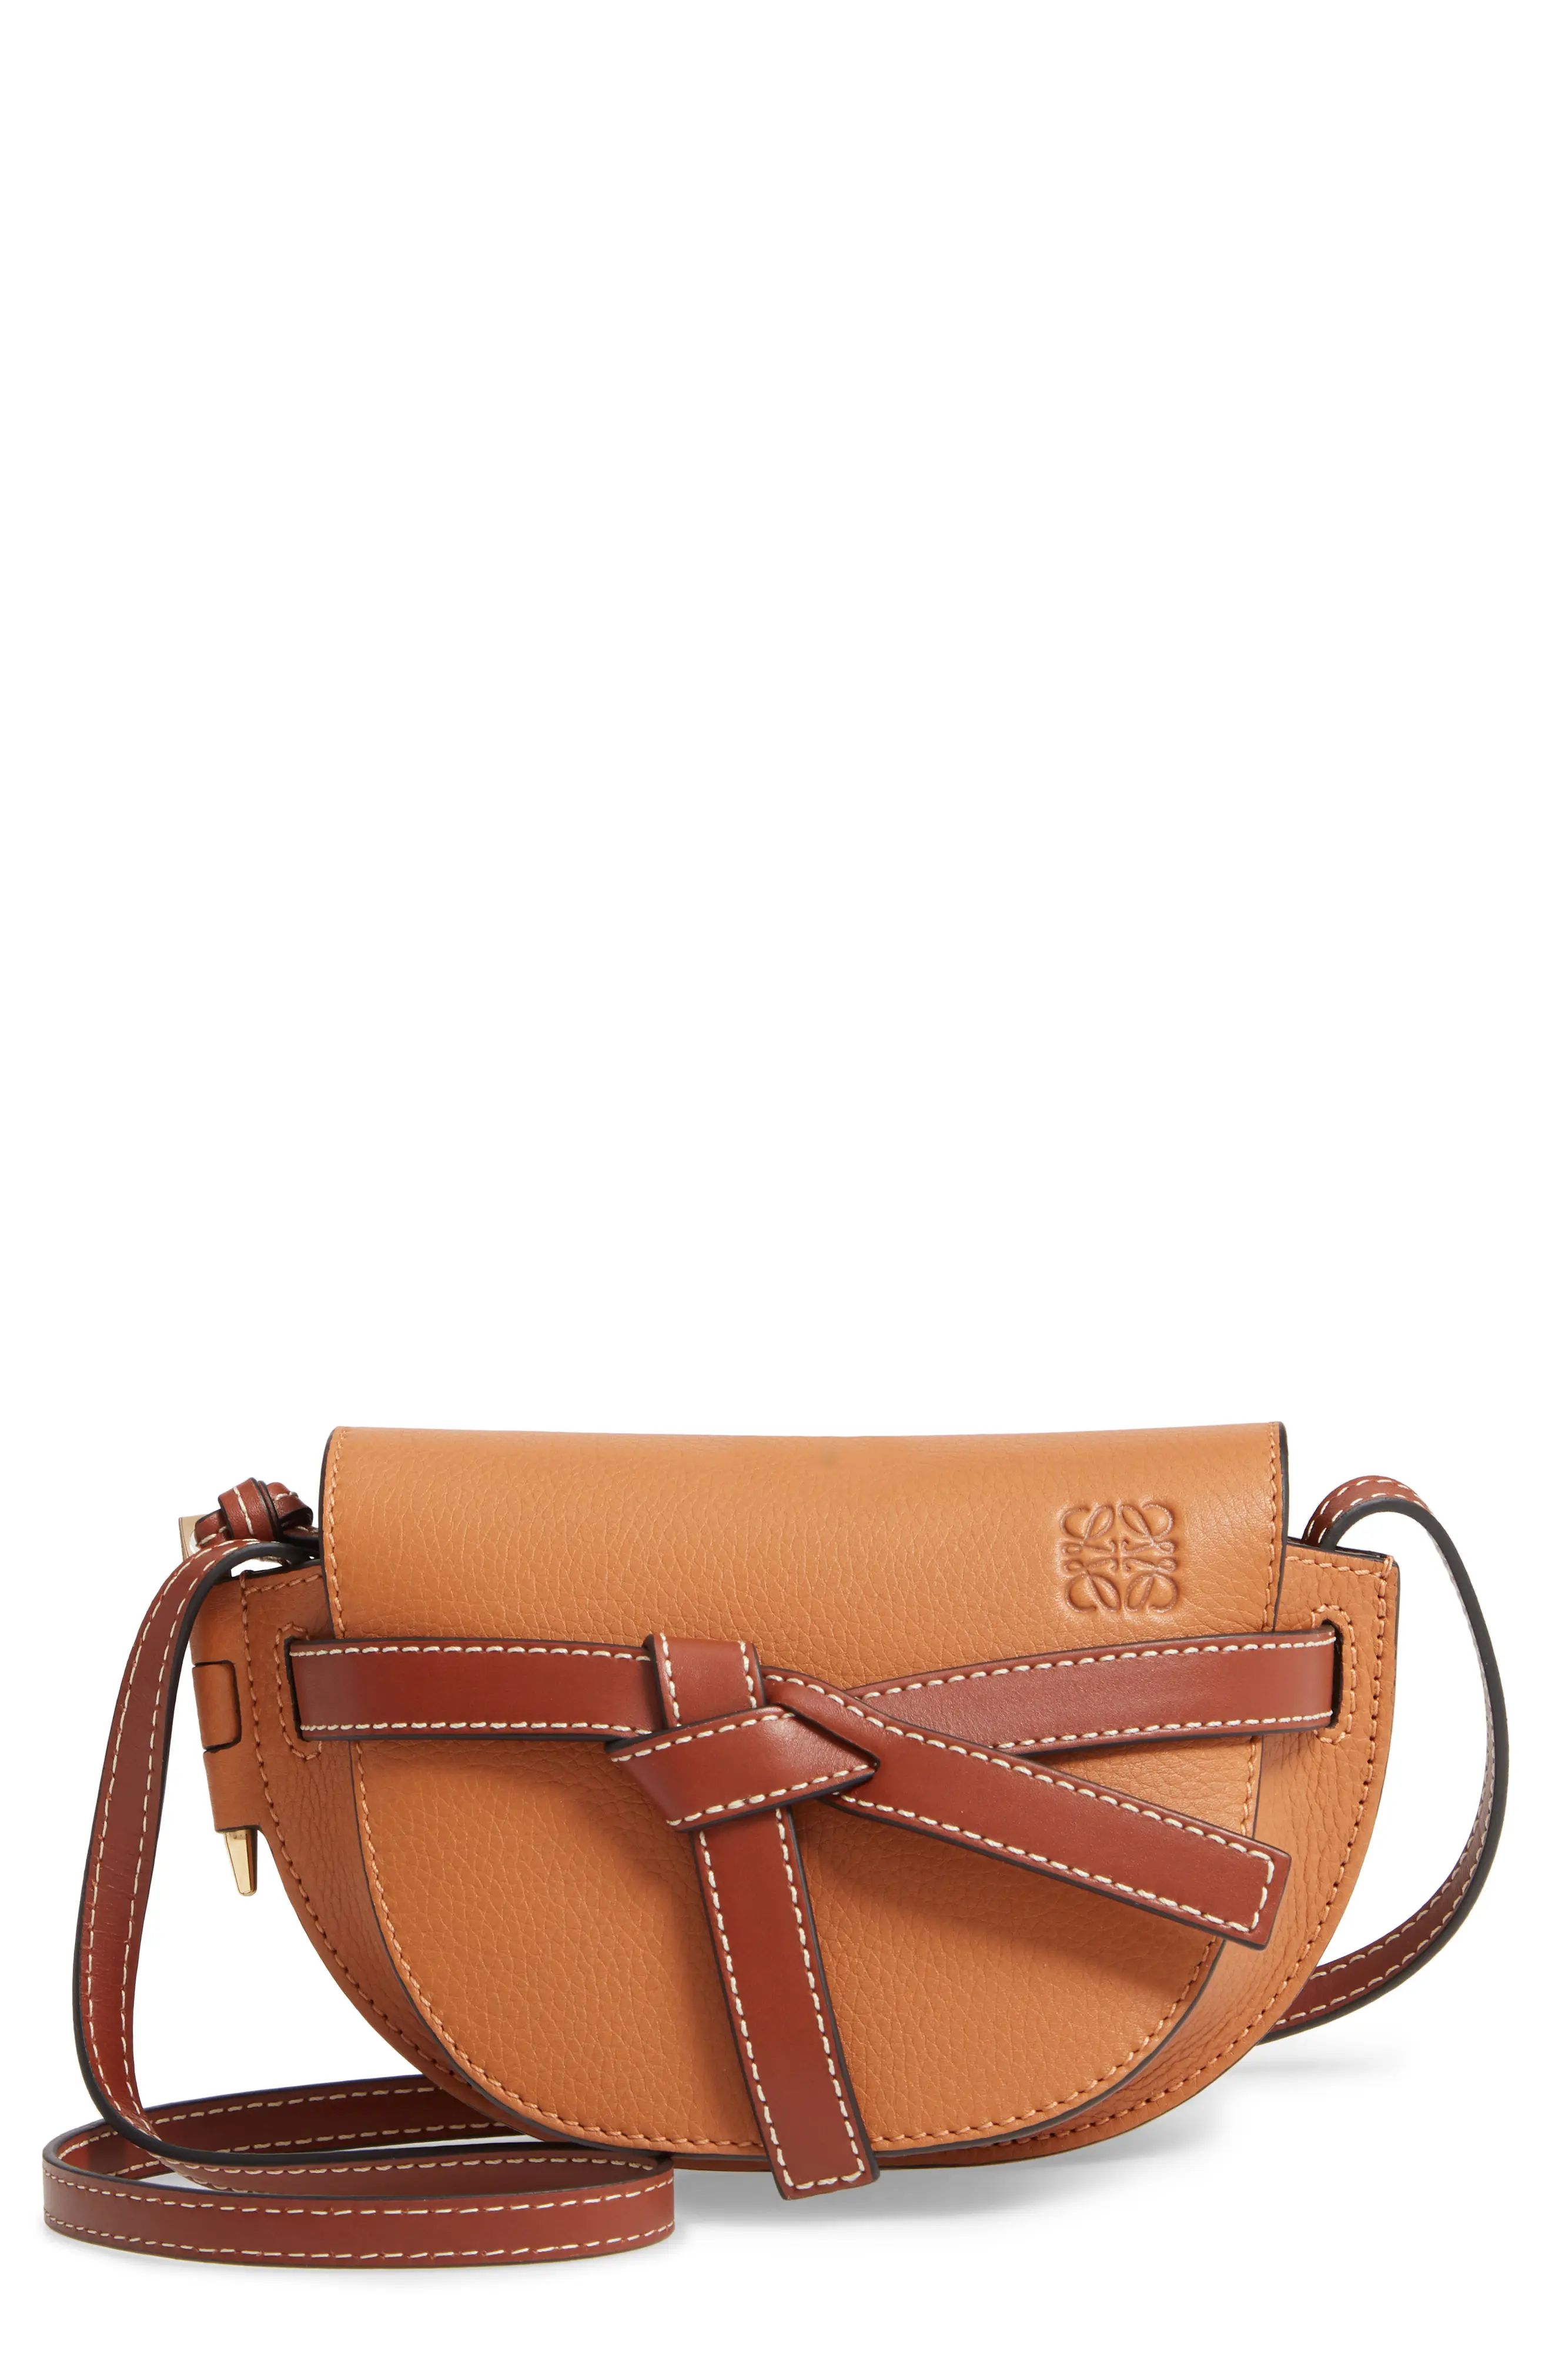 Loewe Mini Leather Crossbody Bag - Brown | Nordstrom